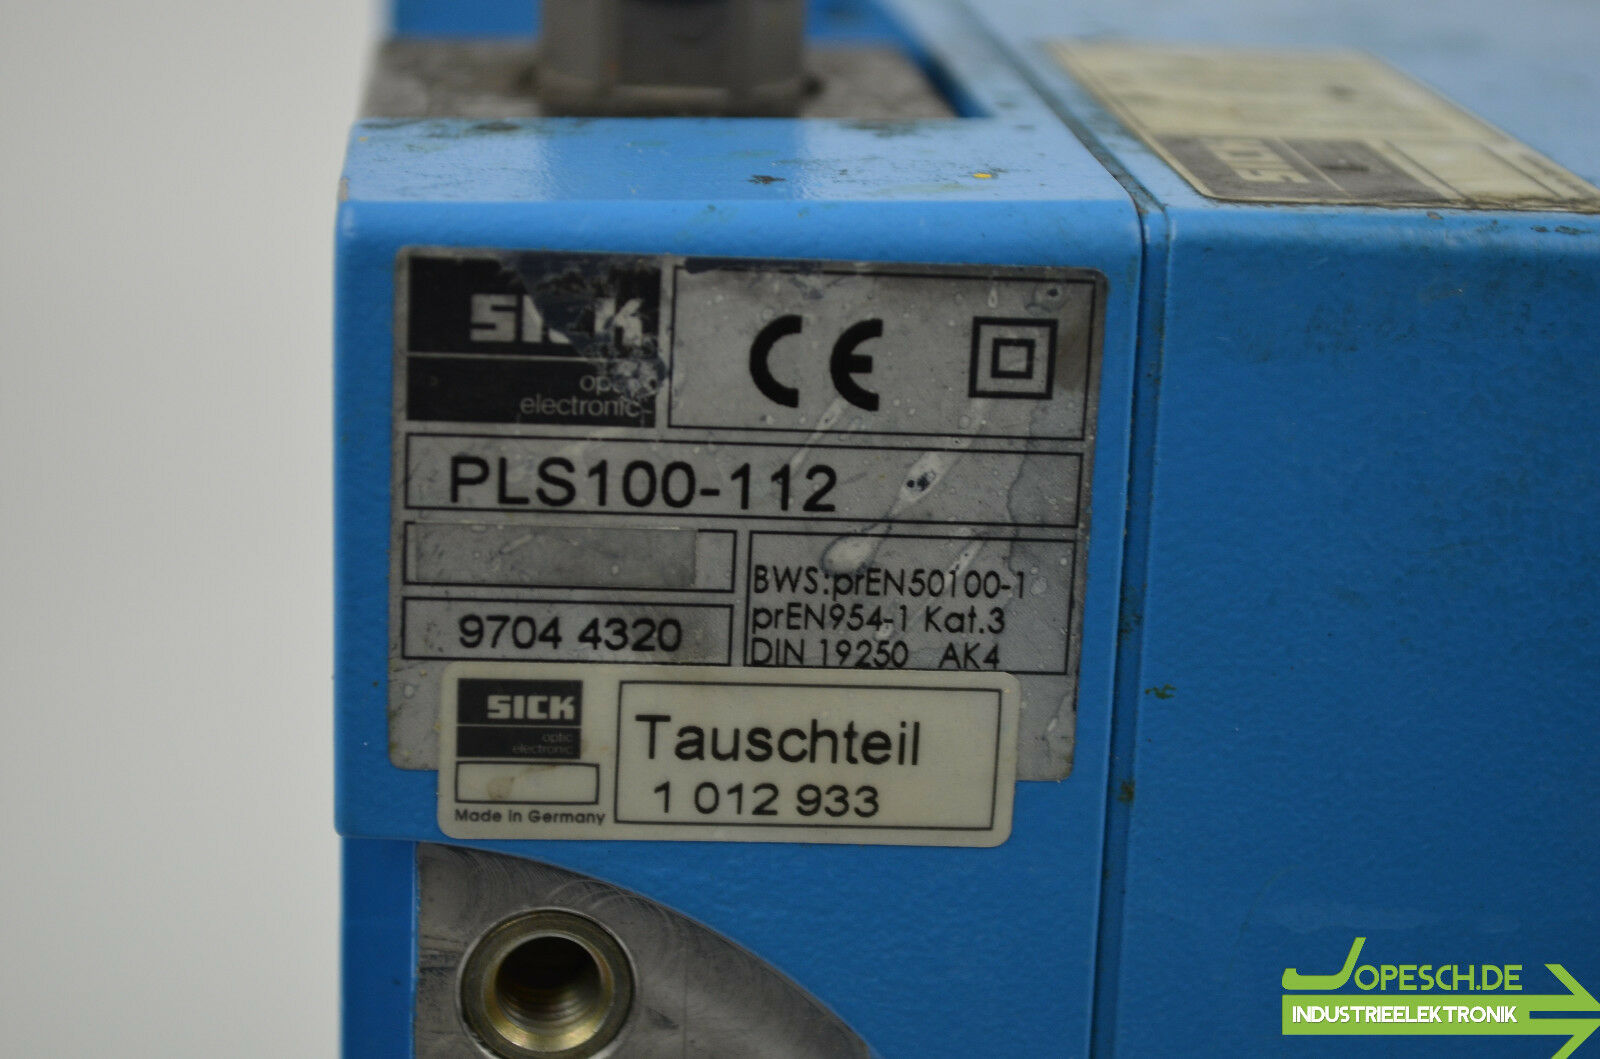 Sick Laserscanner PLS100-112